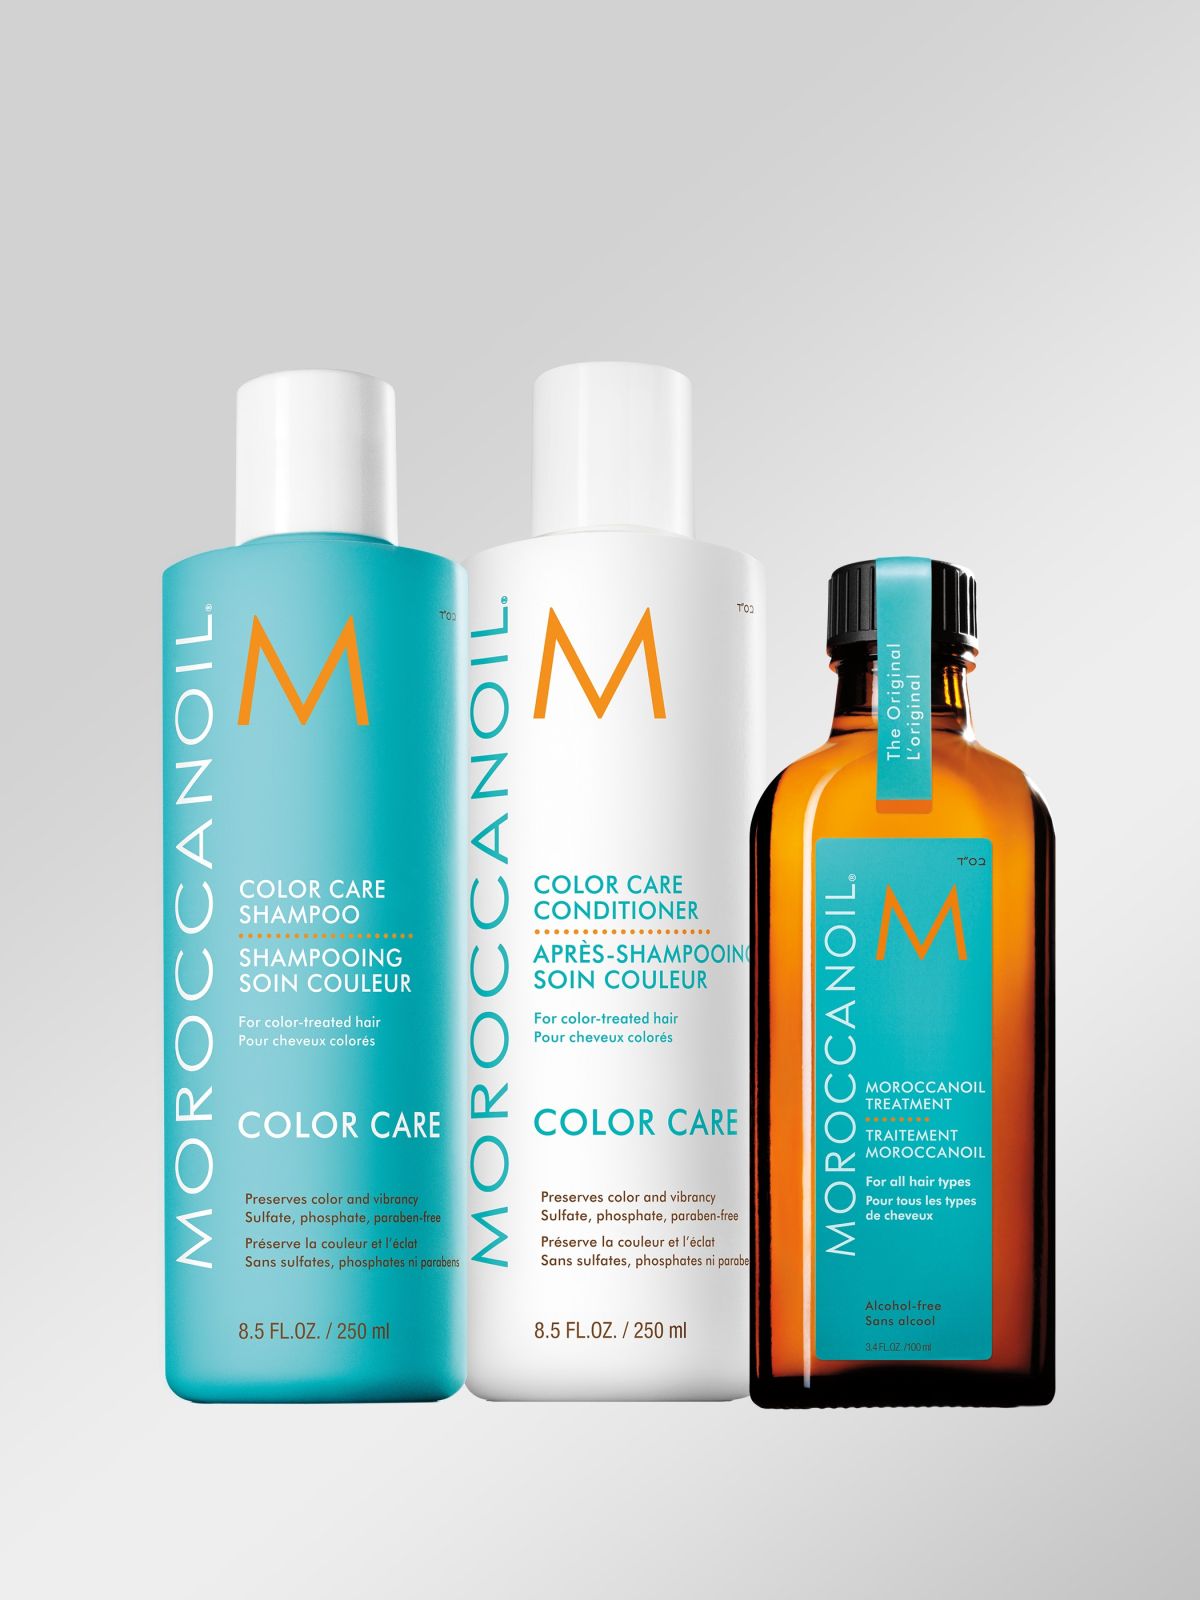  שמפו לשיער צבוע Color Care Shampoo של MOROCCANOIL